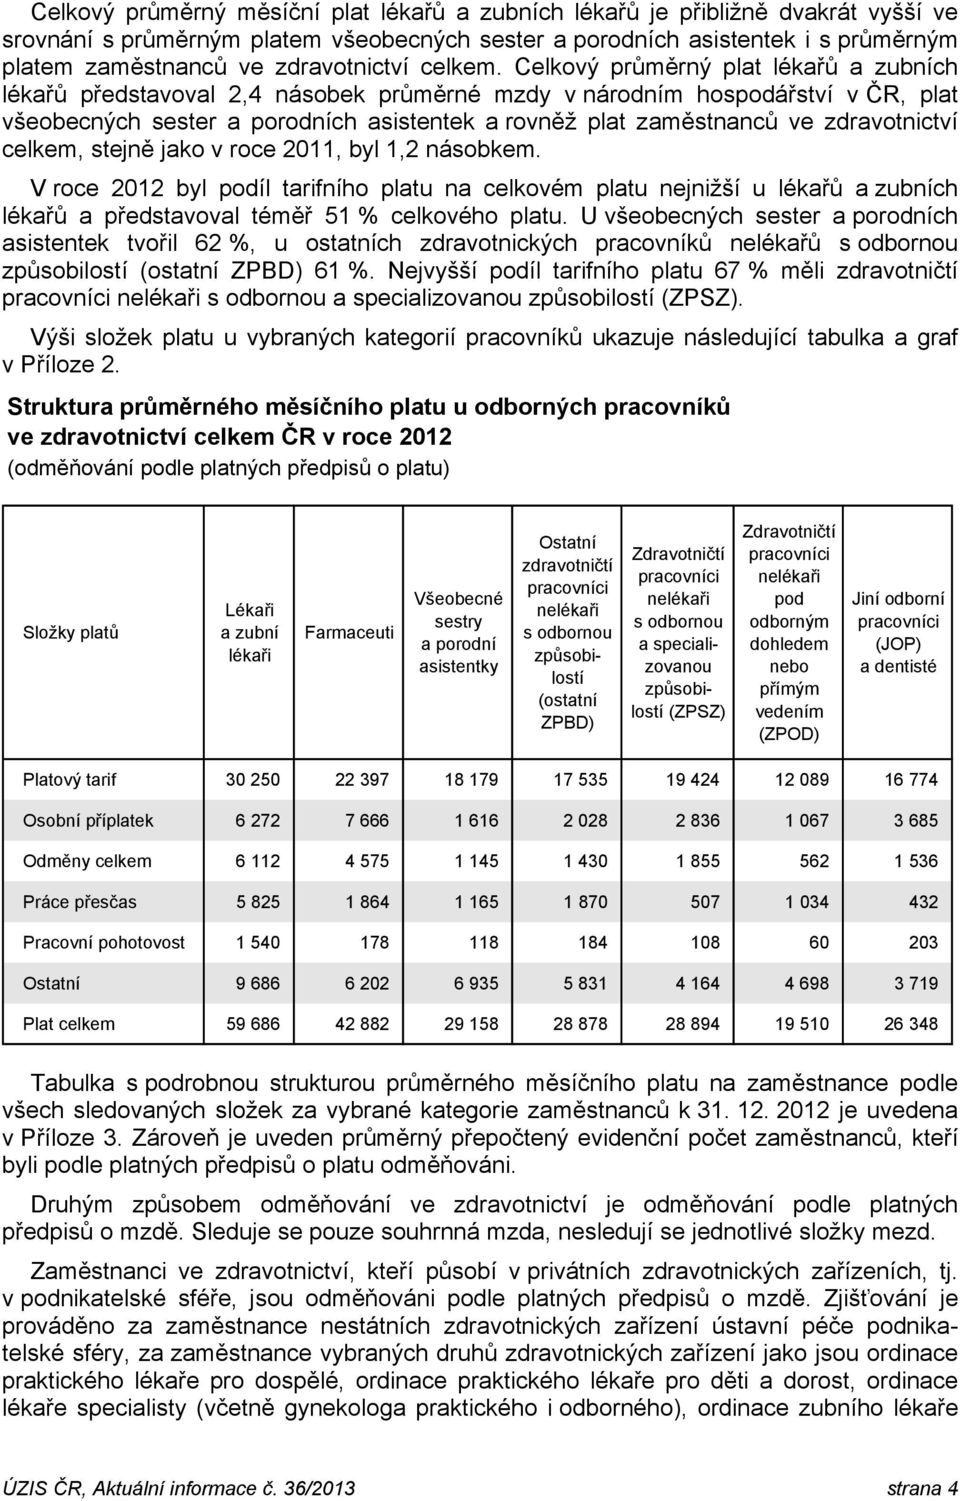 Celkový průměrný plat lékařů a zubních lékařů představoval 2,4 násobek průměrné mzdy v národním hospodářství v ČR, plat všeobecných sester a porodních asistentek a rovněž plat zaměstnanců ve